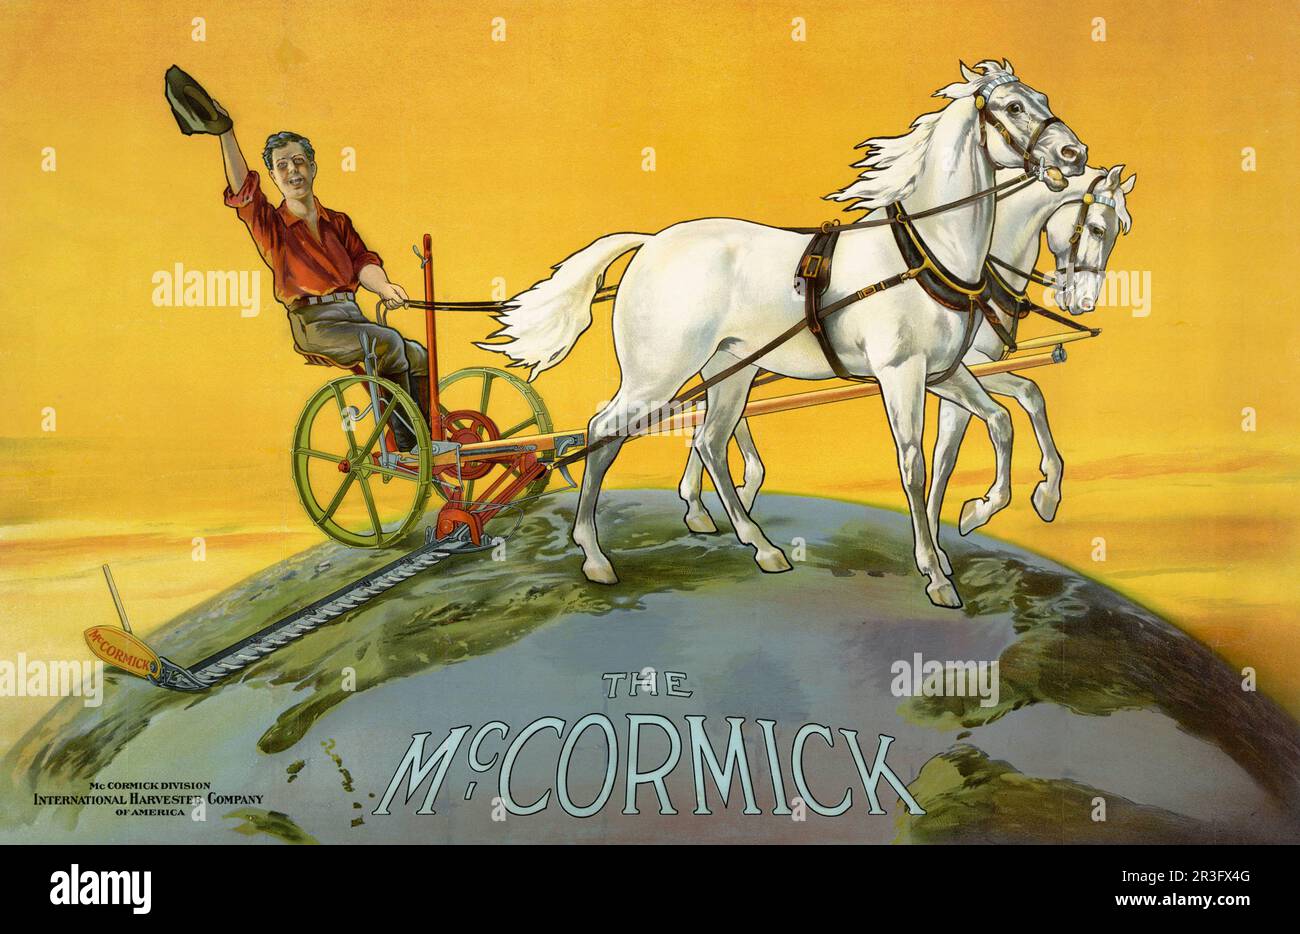 Vintage-Werbung für einen Landwirt, der landwirtschaftliche Maschinen für den Geschäftsbereich McCormick der International Harvester Company betreibt. Stockfoto